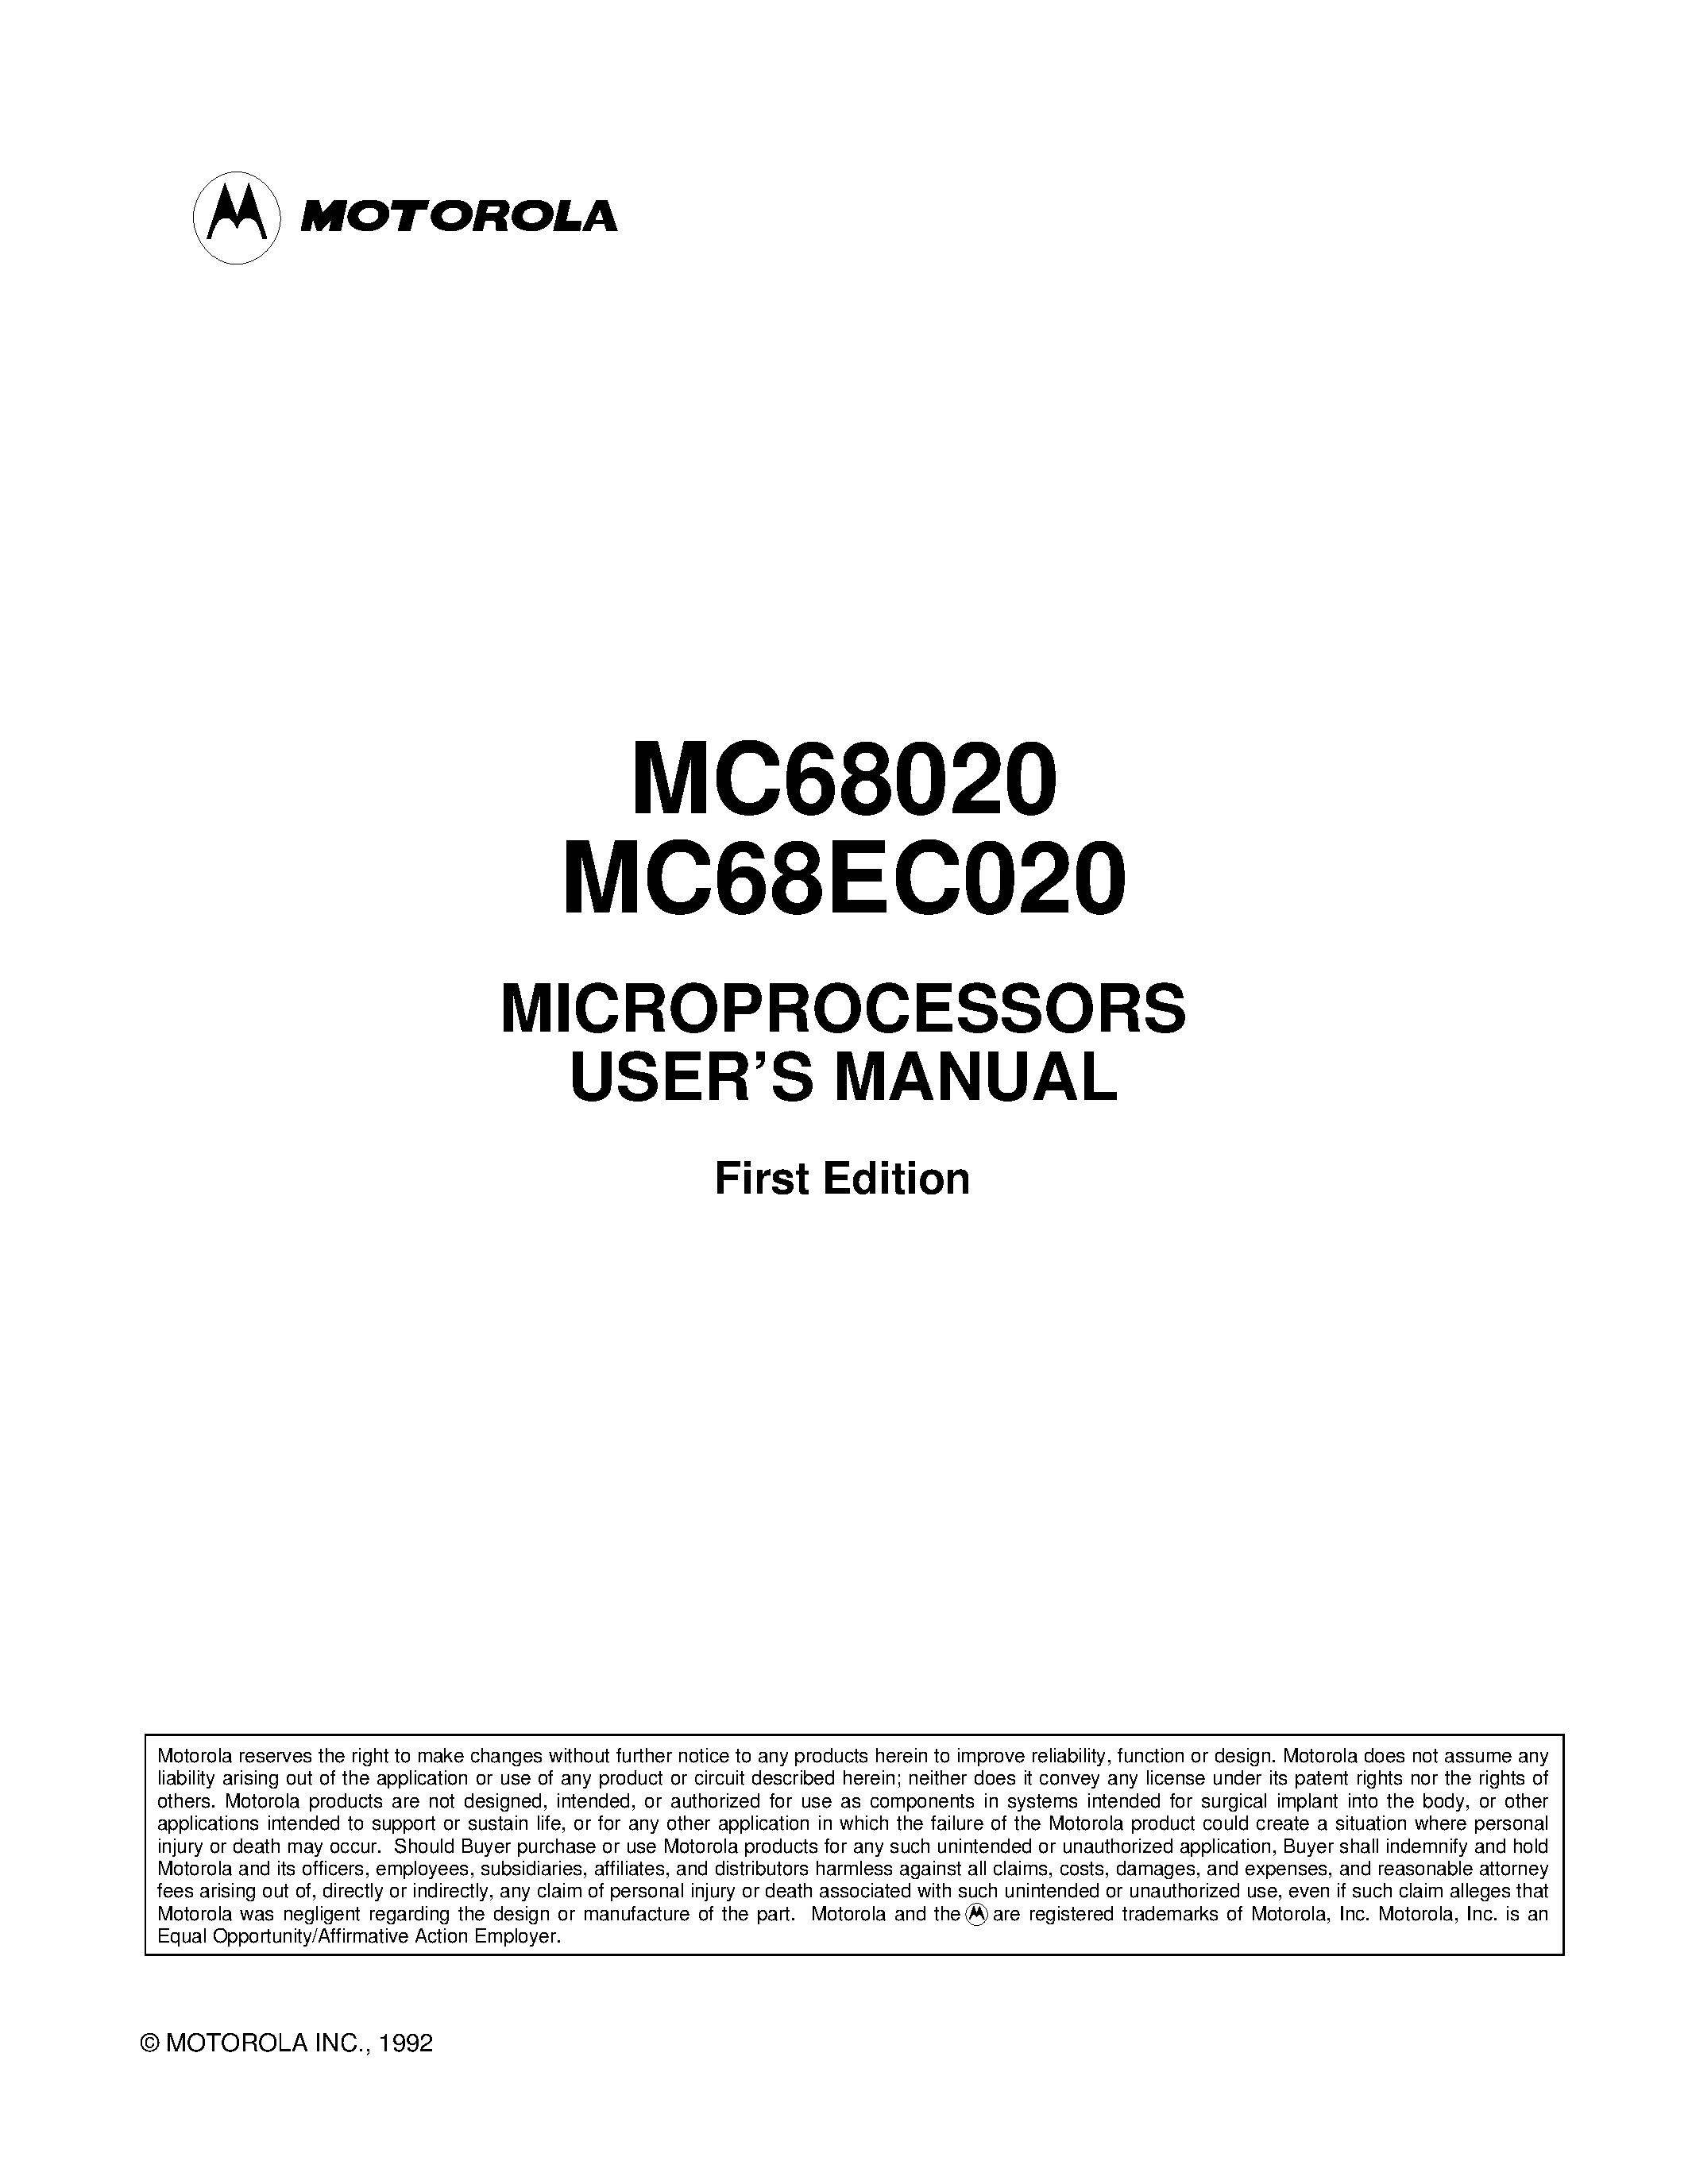 Даташит MC68020 - (MC68020 / MC68EC020) MICROPROCESSORS USERS MANUAL страница 1